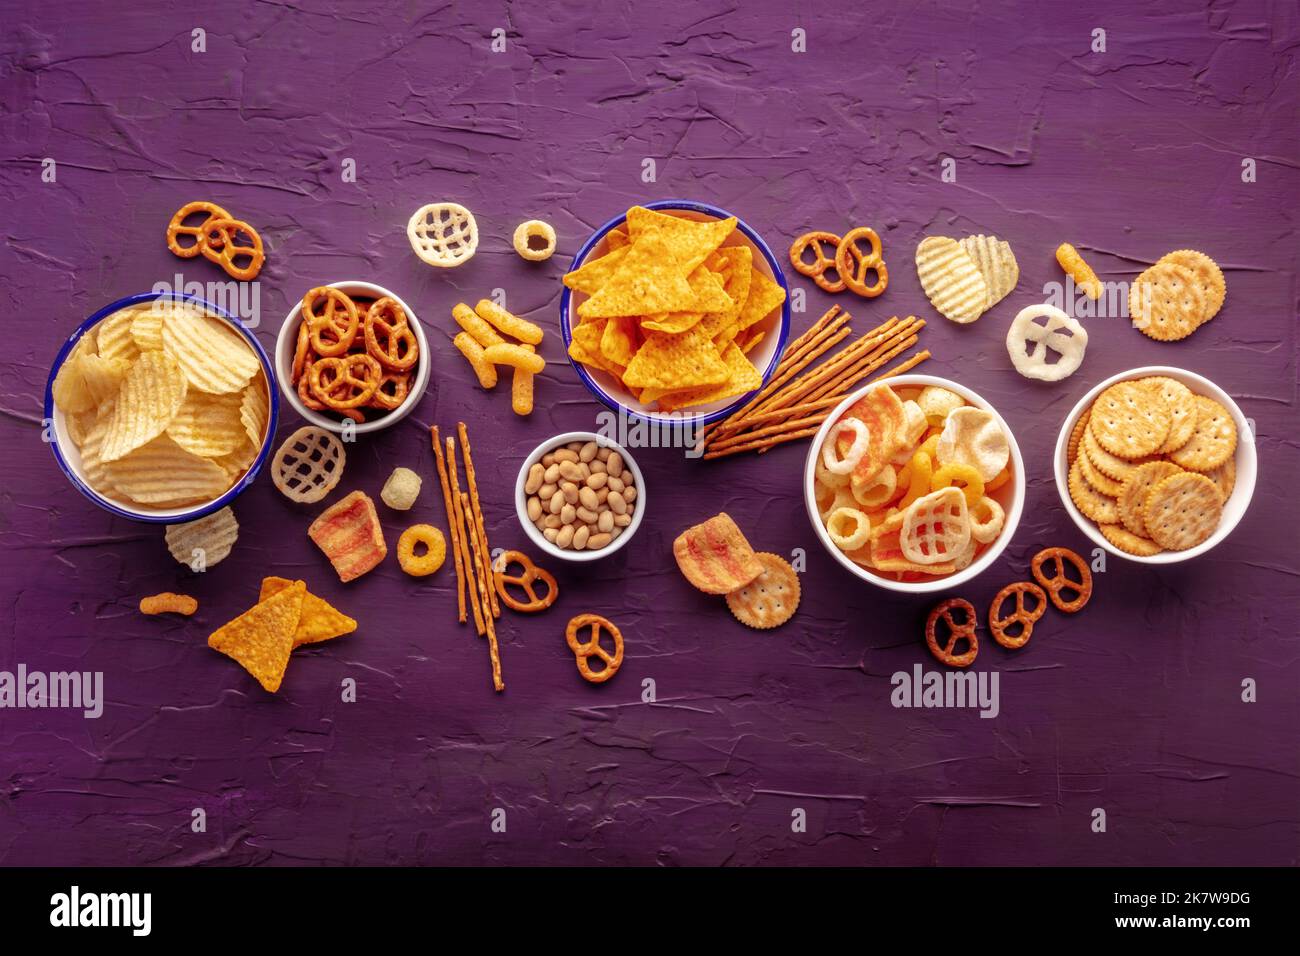 Salzige Snacks. Party Food Mix Hintergrund. Kartoffel- und Tortilla-Chips, Cracker und andere Vorspeisen in Schüsseln, darüber liegende flache Schuss Stockfoto